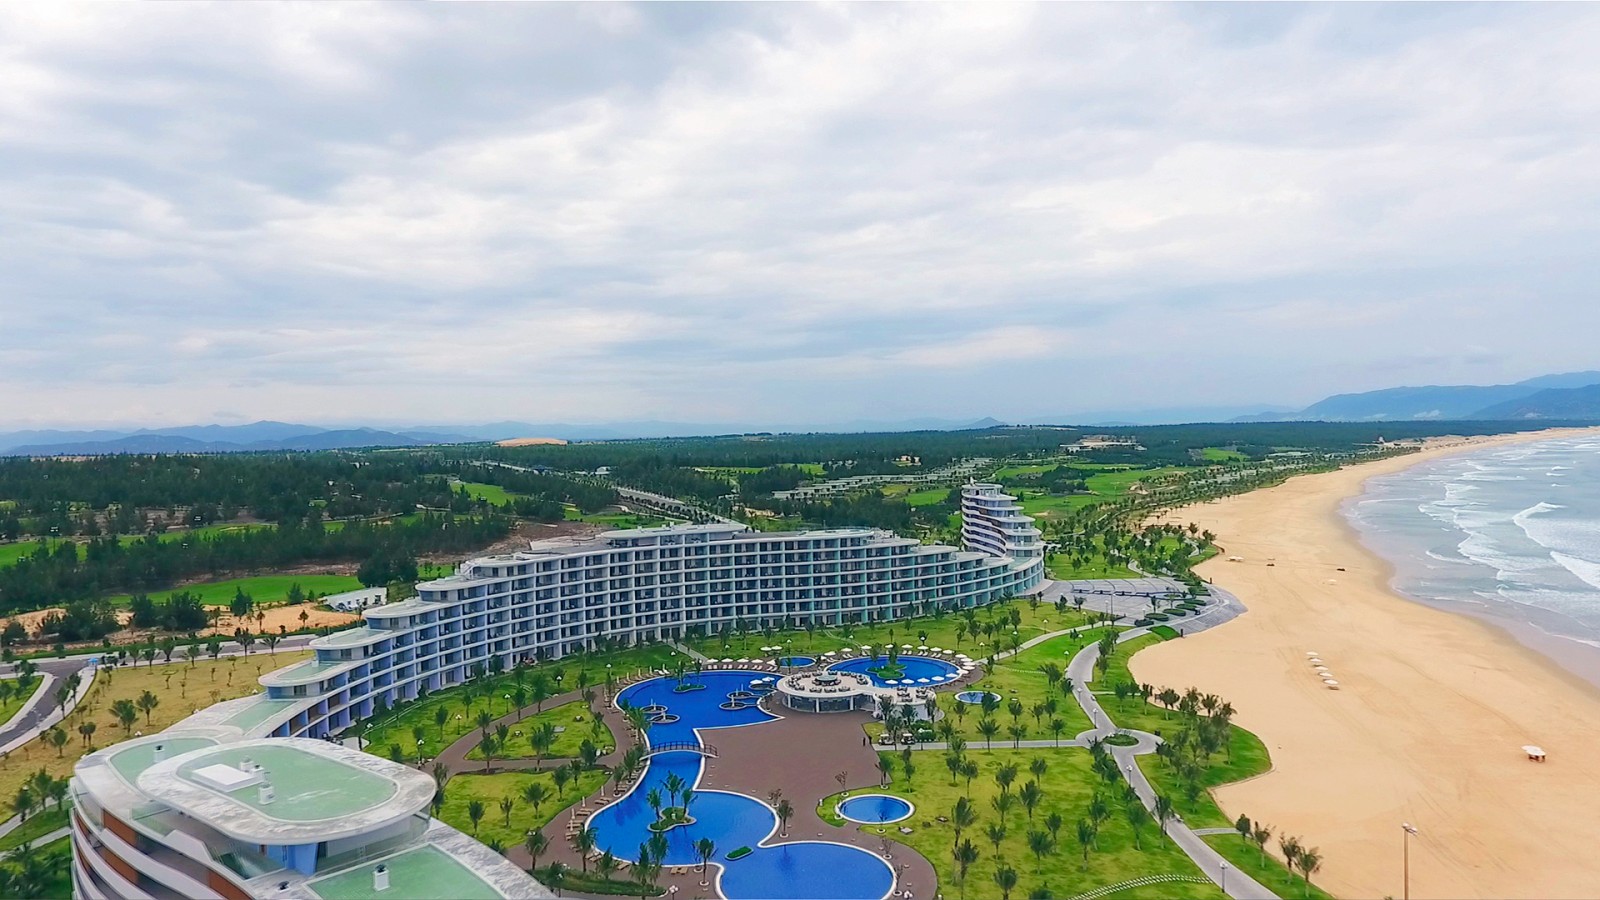 Khách sạn FLC Luxury Hotel Quy Nhơn đã được Giải thưởng Bất động sản châu Á bình chọn là khách sạn có “Thiết kế cảnh quan đẹp nhất” và có “Thiết kế kiến trúc độc đáo nhất” năm 2016.